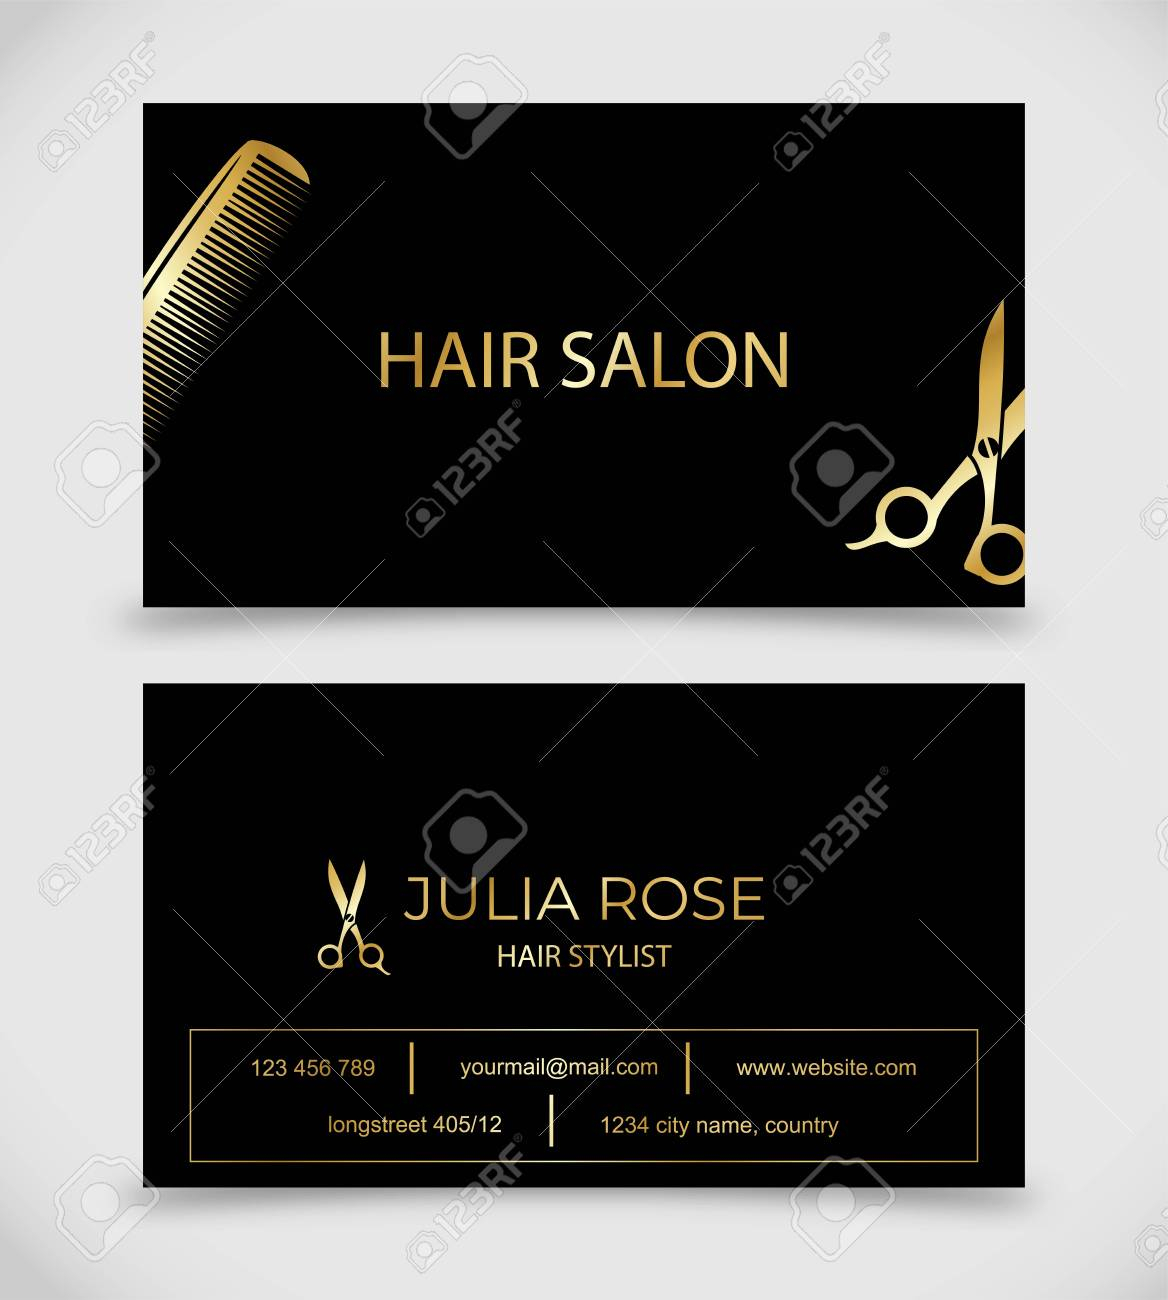 Hair Salon, Hair Stylist Business Card Vector Template Within Hair Salon Business Card Template